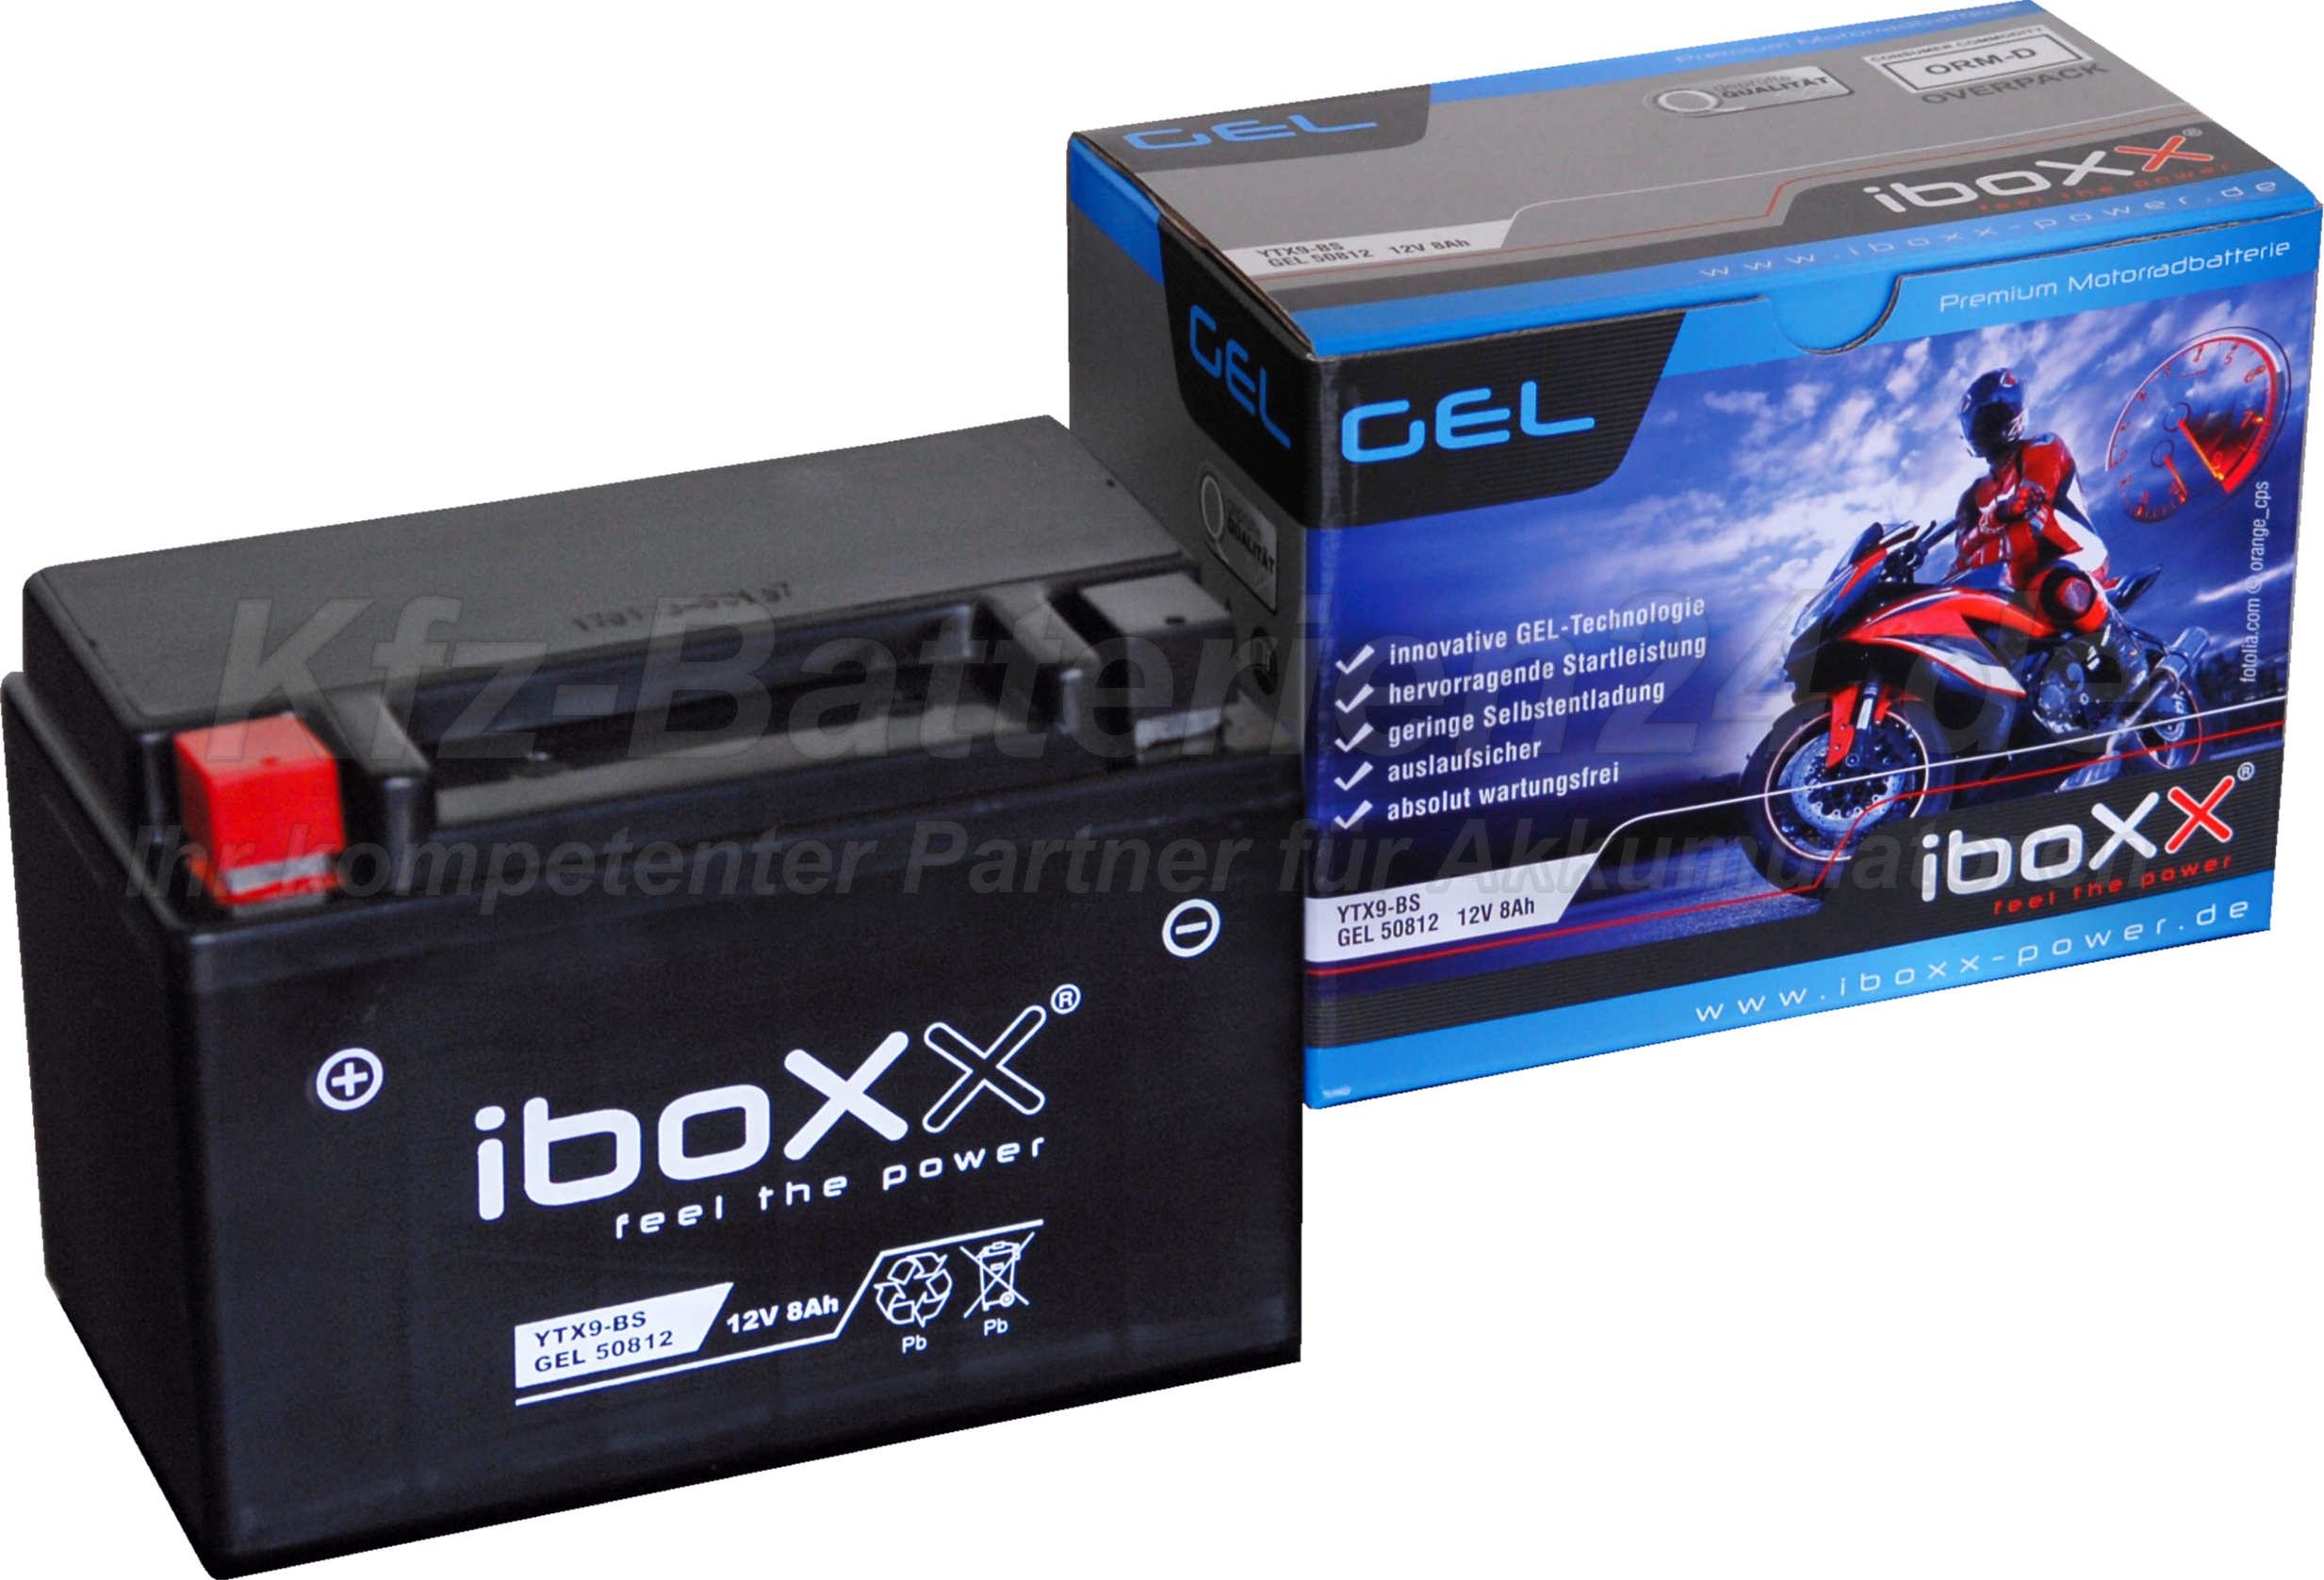 GEL Motorradbatterie 12V 8Ah 50812 YTX9-BS Gelbatterie